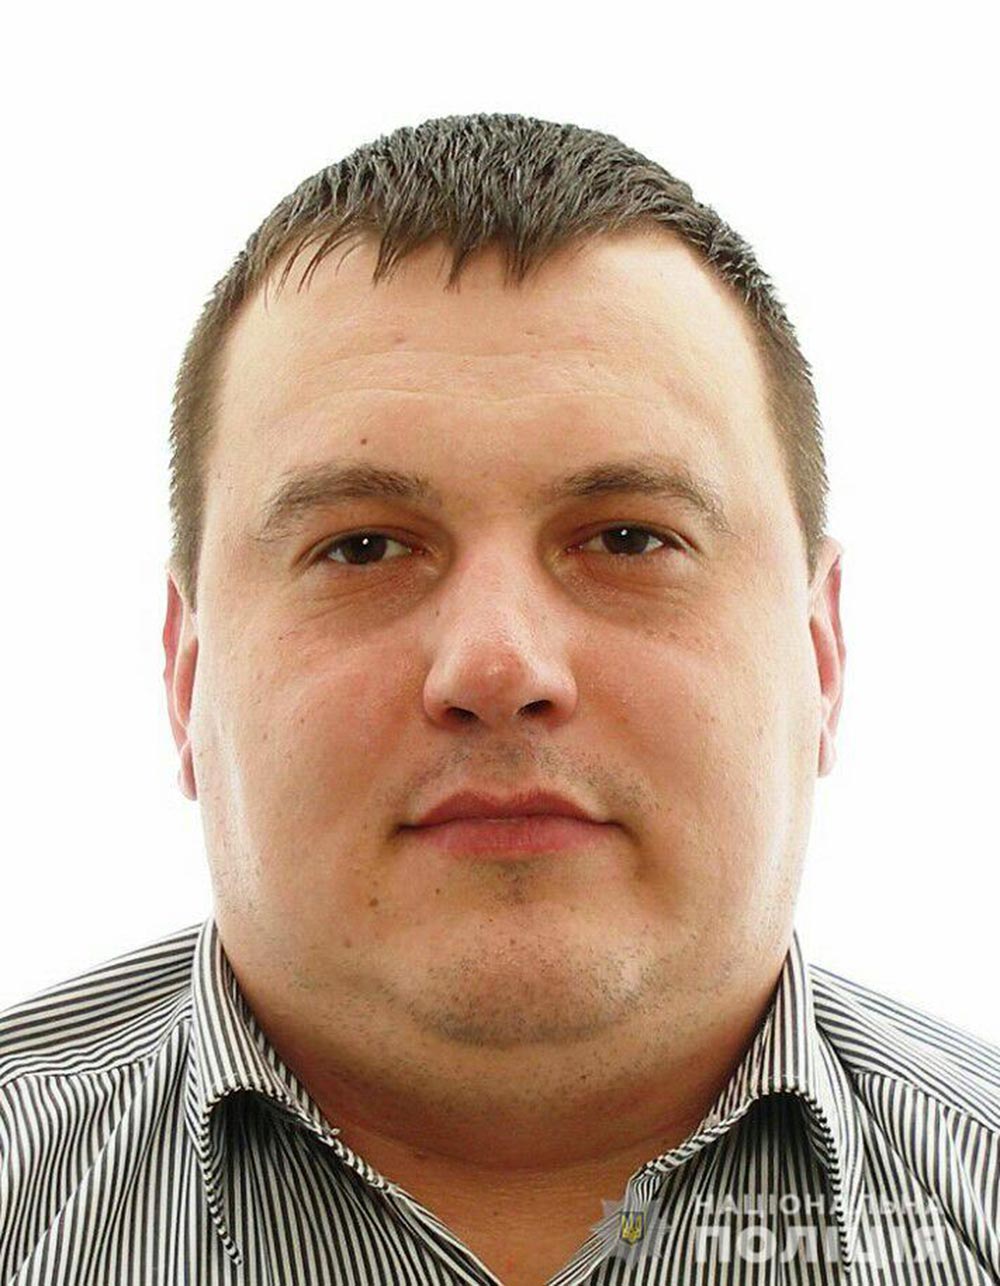 Поліція розшукує жителя Немирова  за підозрою у крадіжці